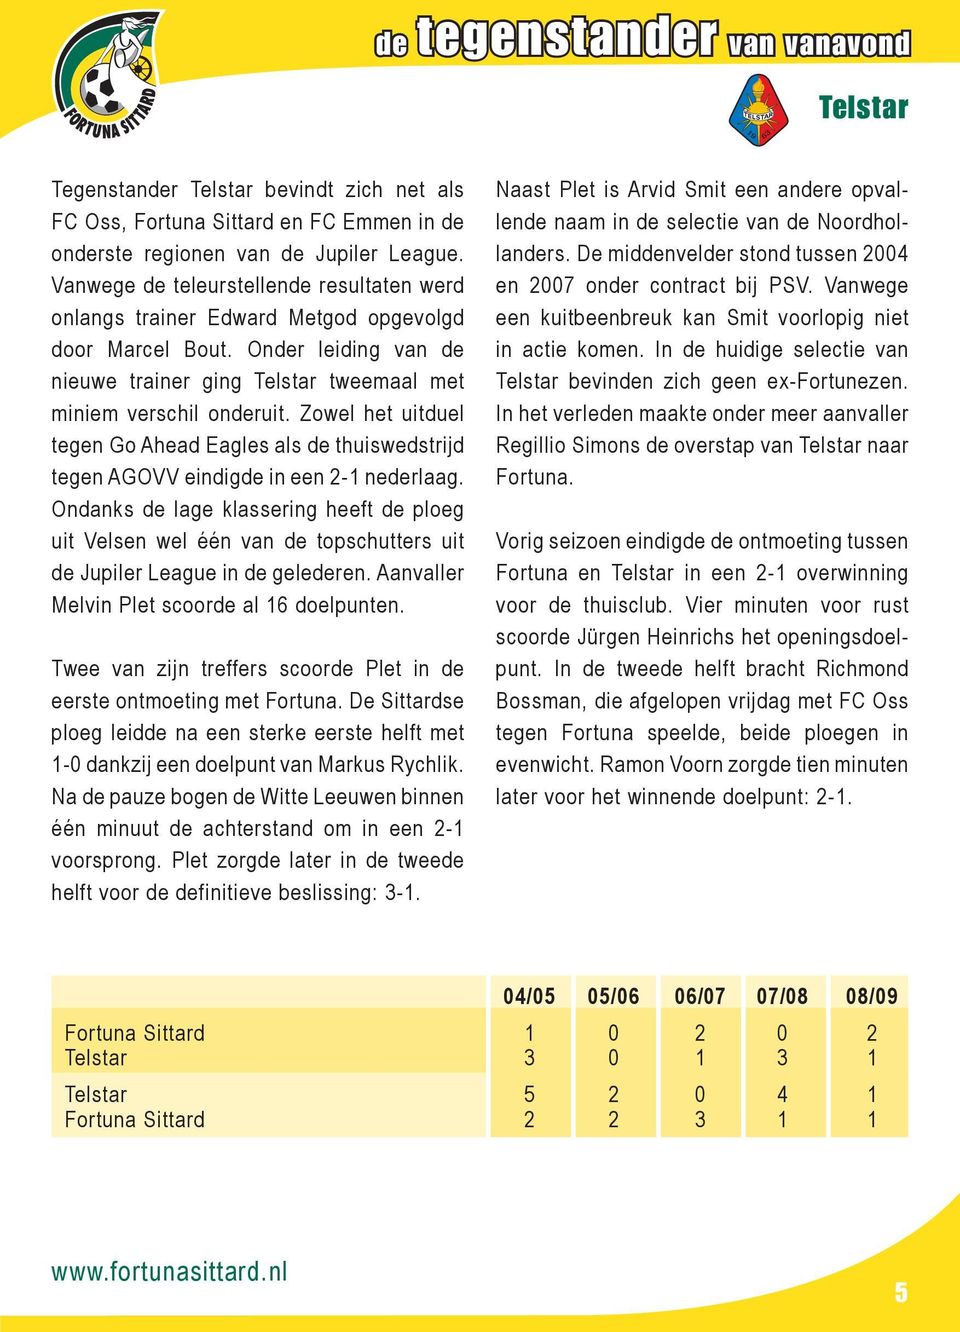 Zowel het uitduel tegen Go Ahead Eagles als de thuiswedstrijd tegen AGOVV eindigde in een 2-1 nederlaag.